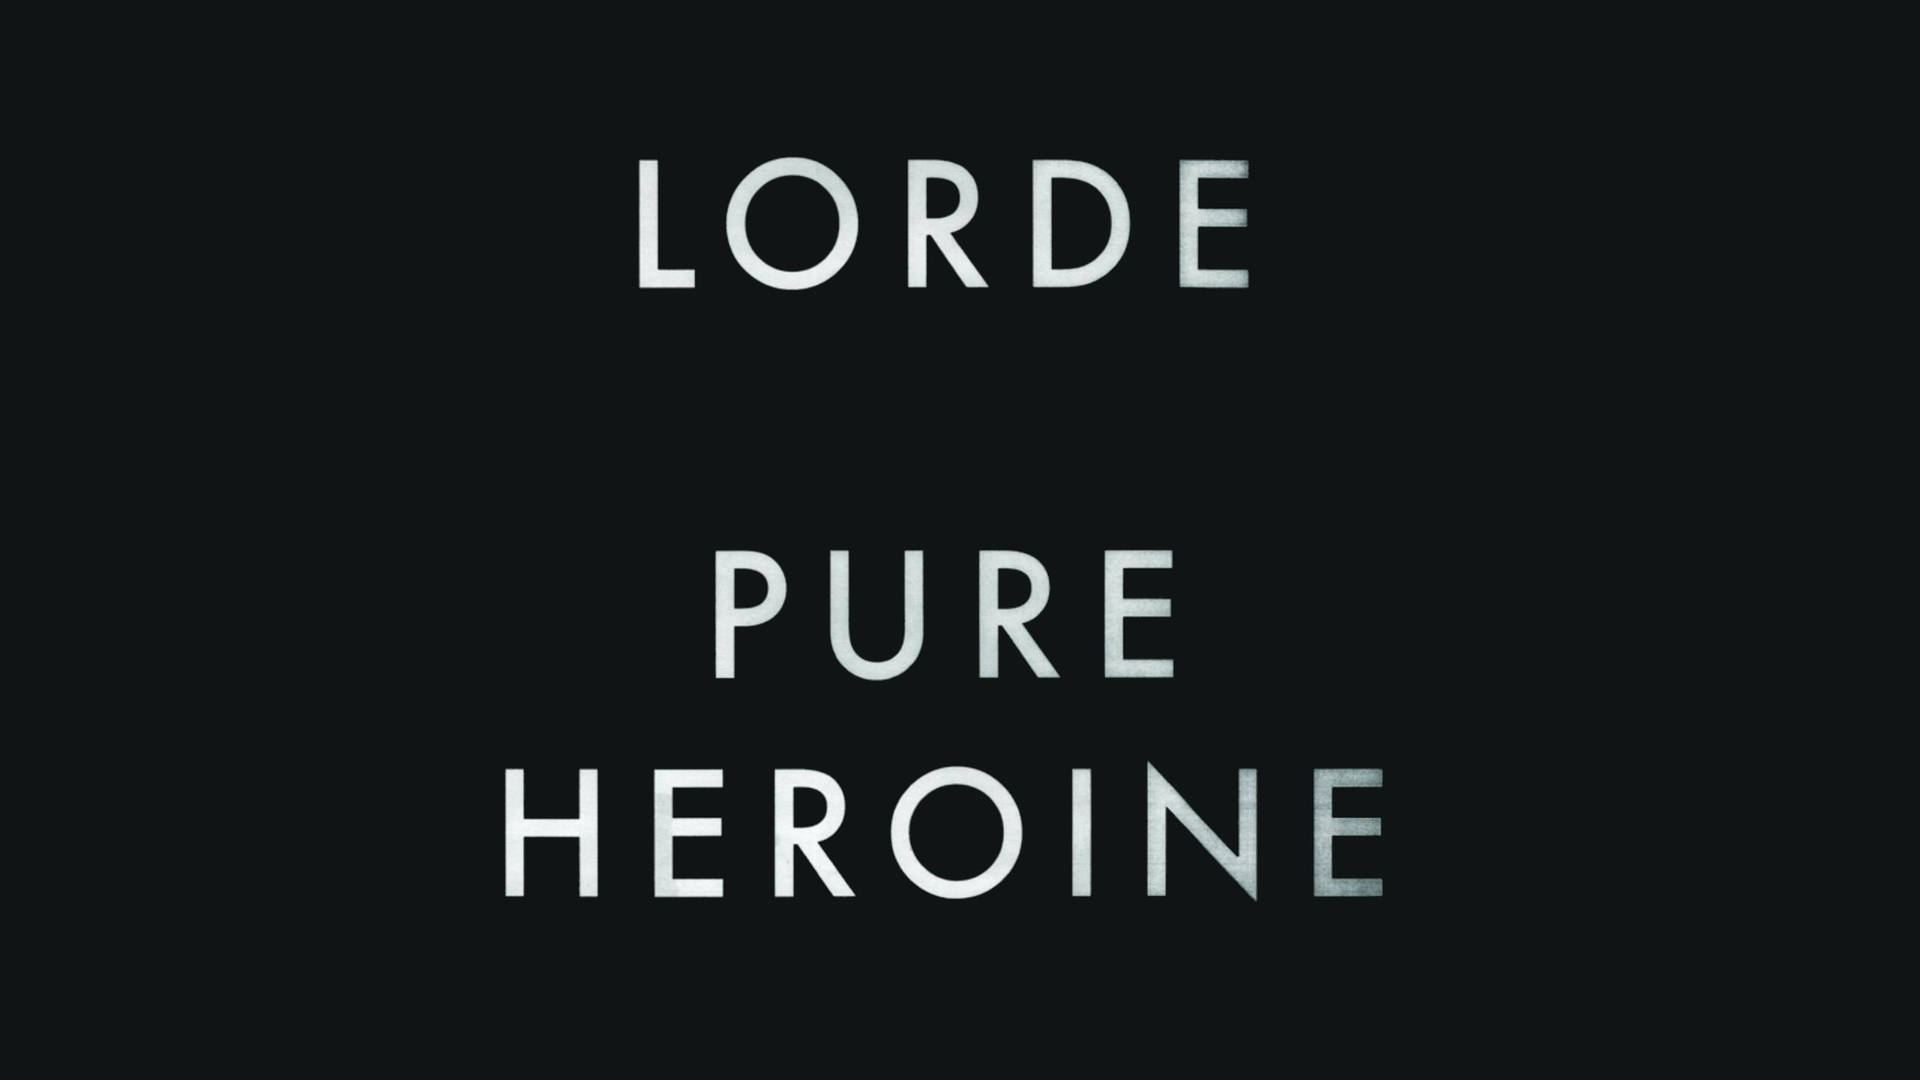 Lorde Pure Heroine Album Poster Wallpaper